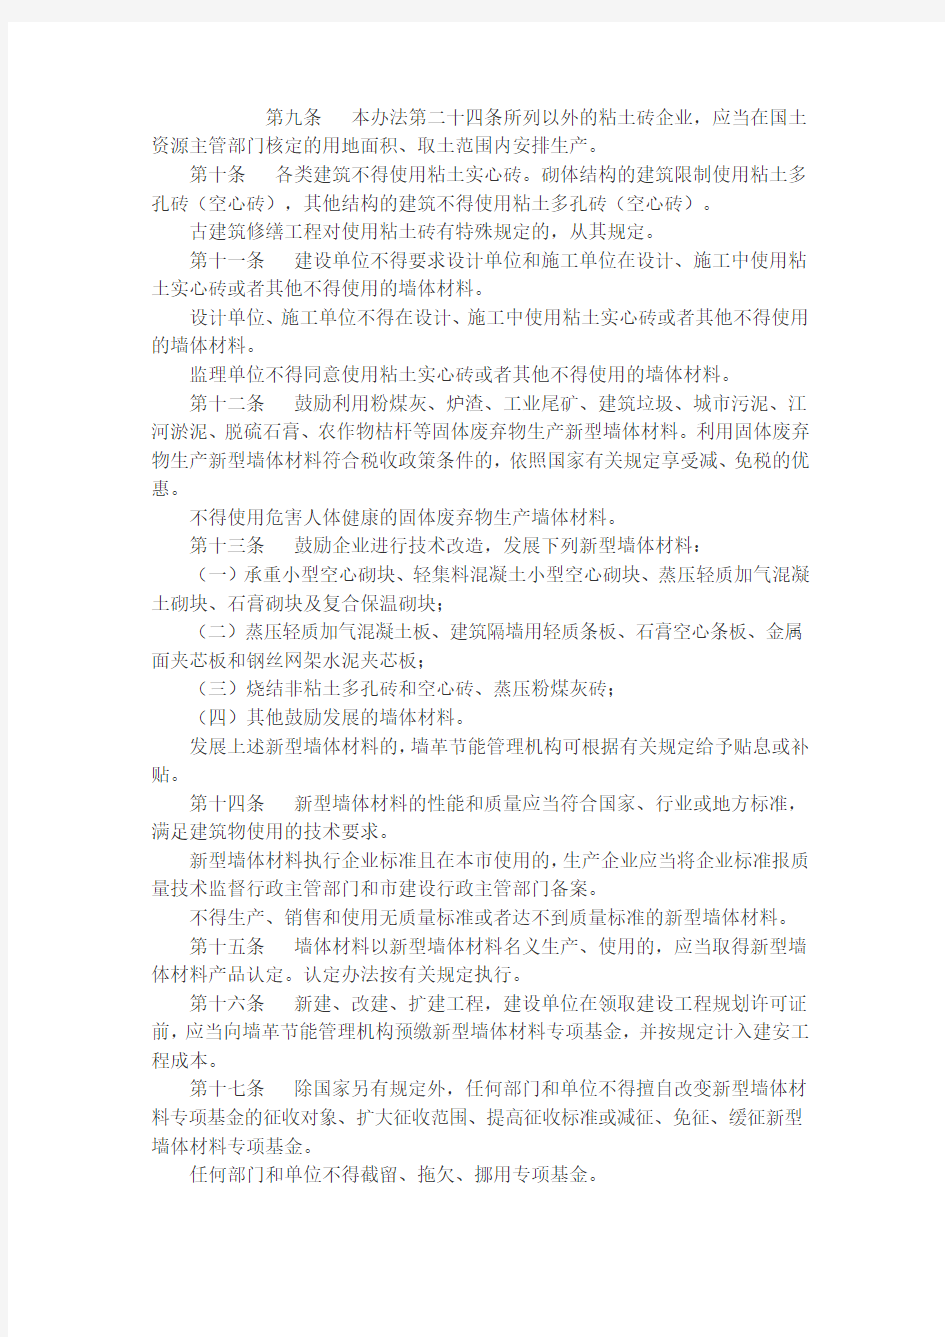 南京市建筑节能与墙体材料革新管理办法(政府令第255号)2012